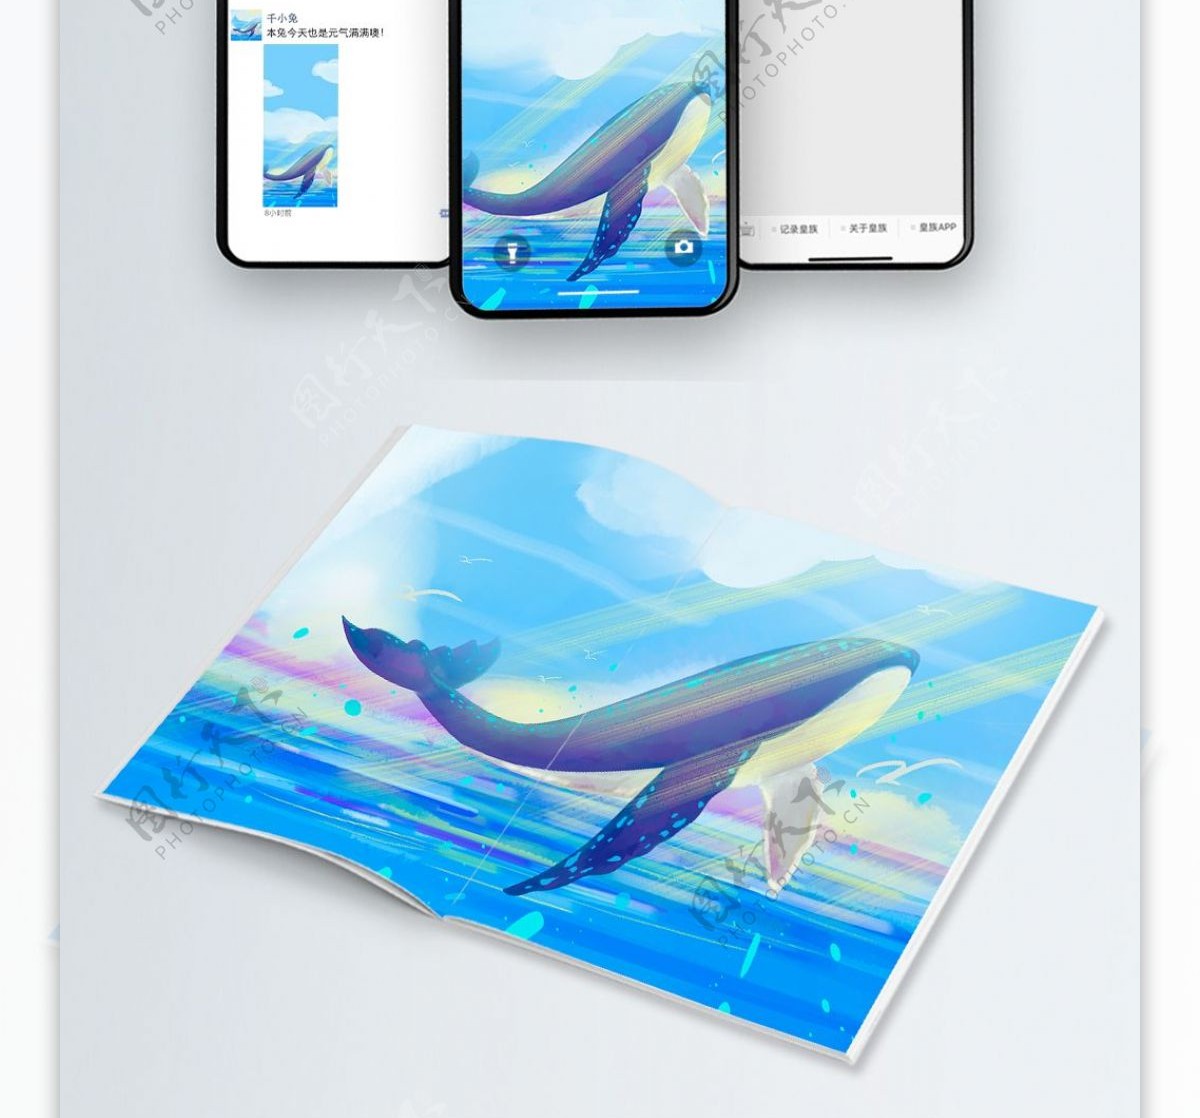 原创清新蓝色照射下的飞跃的鲸鱼插画